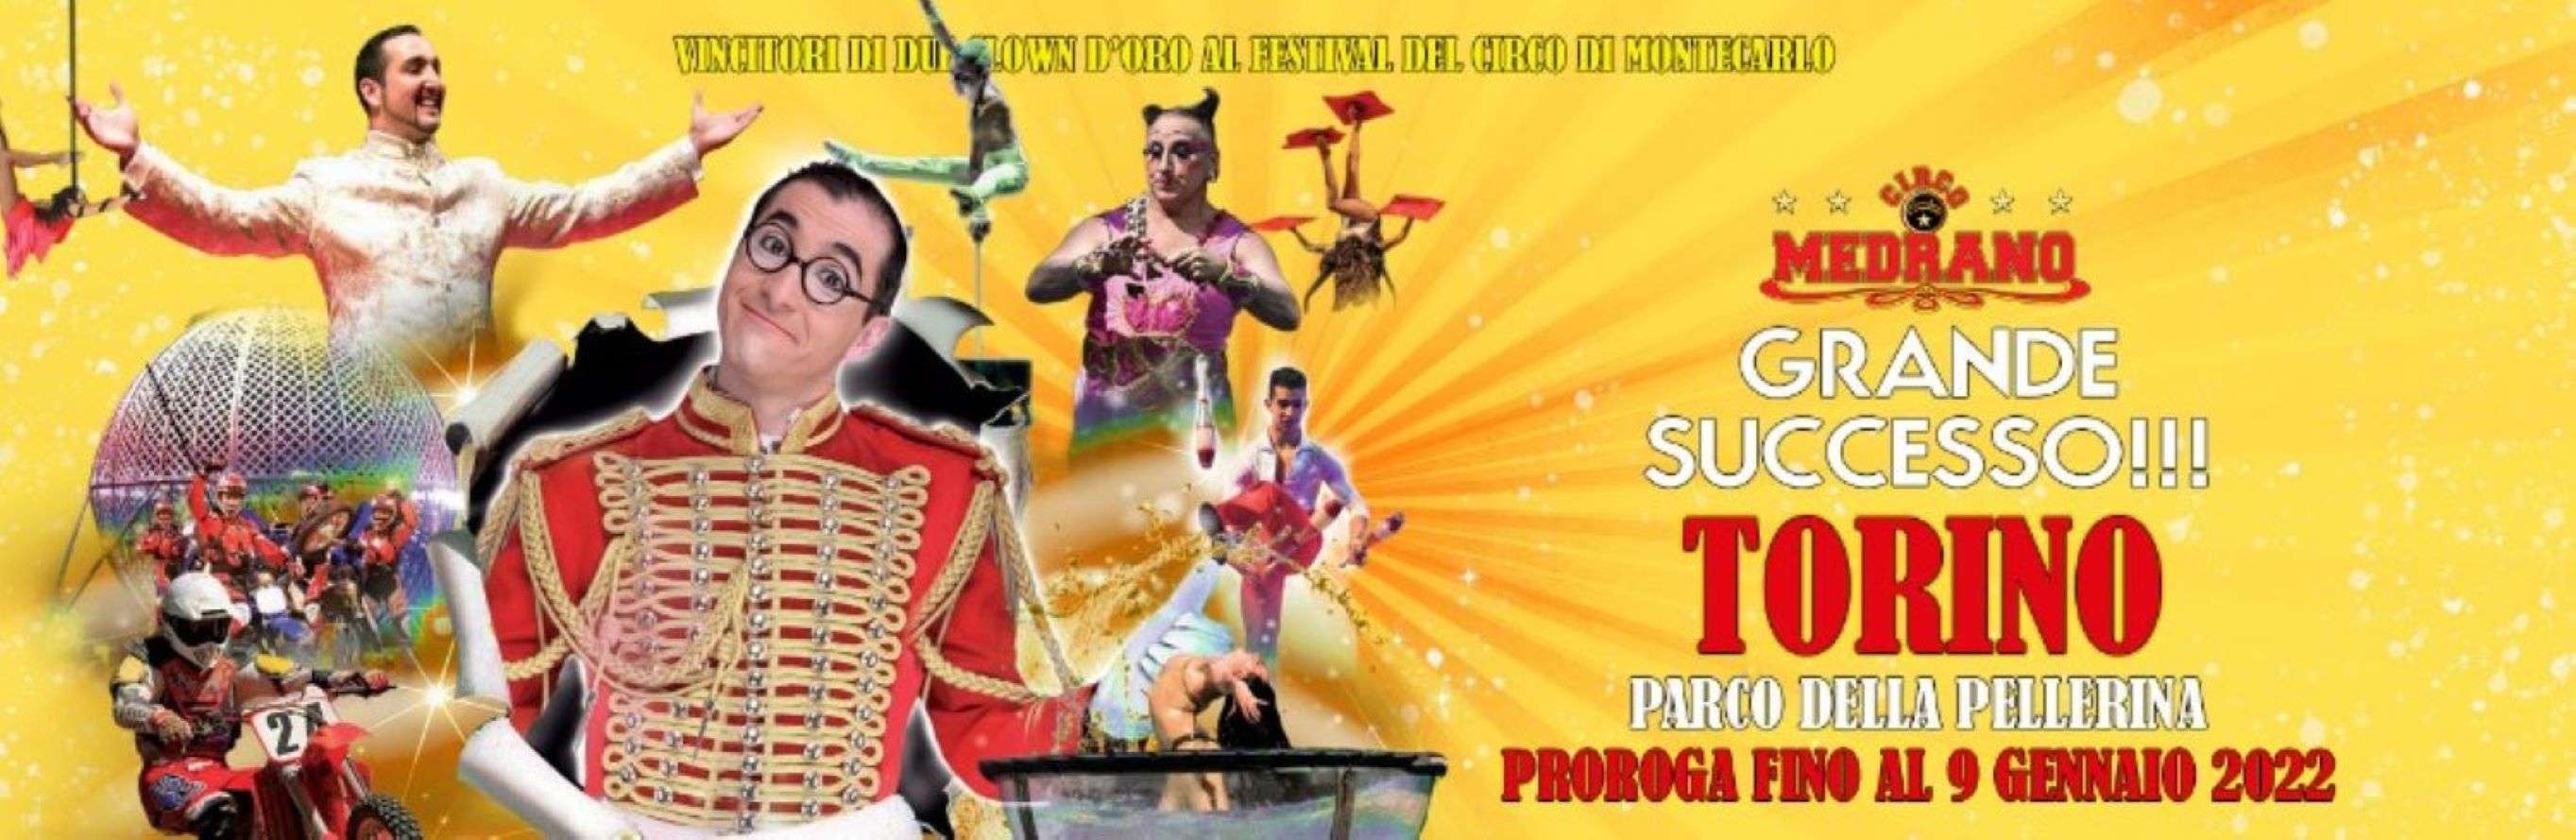 Il Circo Medrano protagonista alla Pellerina fino al 9 gennaio